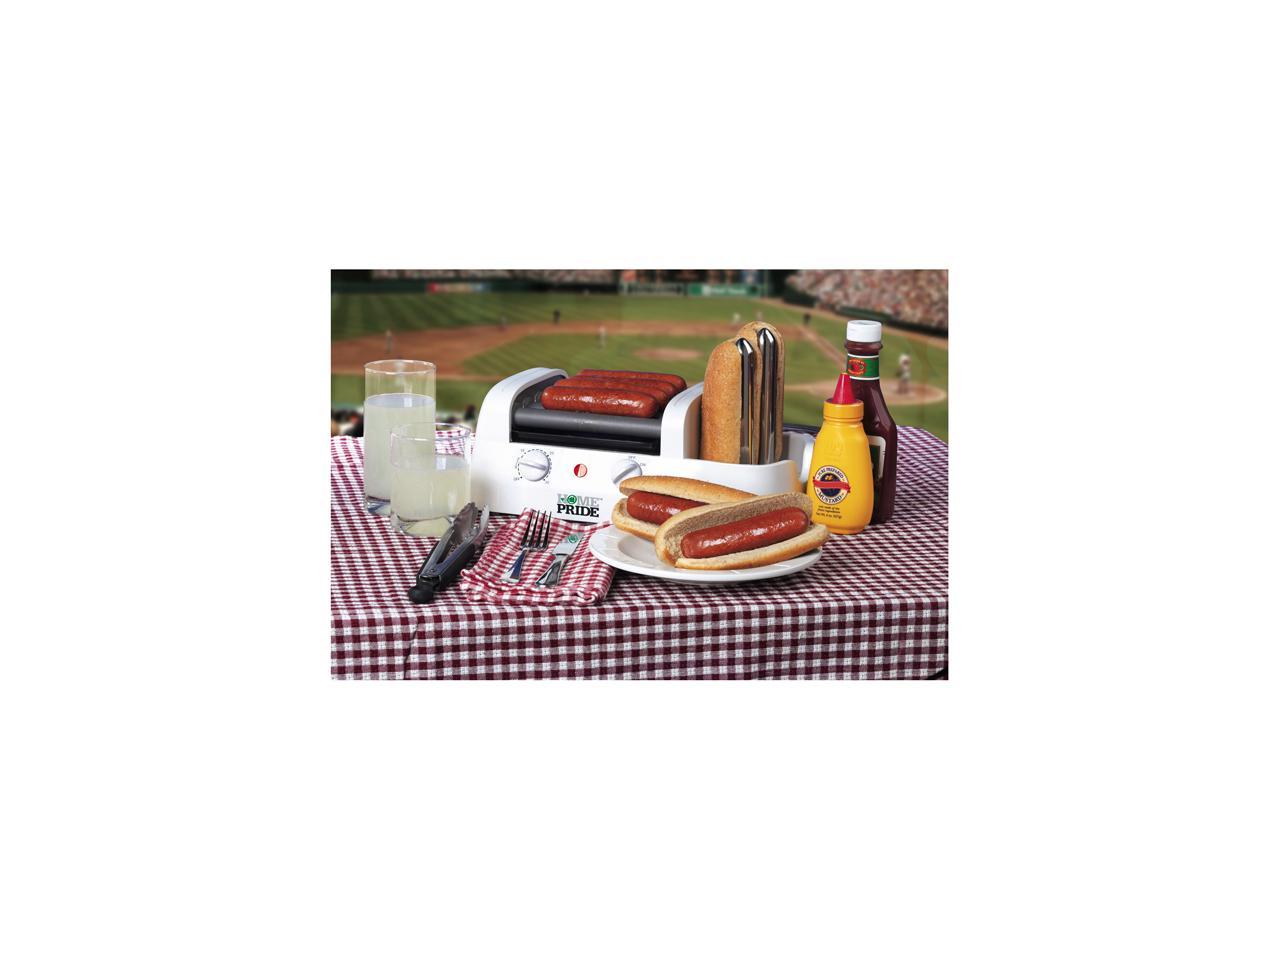 Home Pride Ballpark Hot Dog Rotisserie Griller 